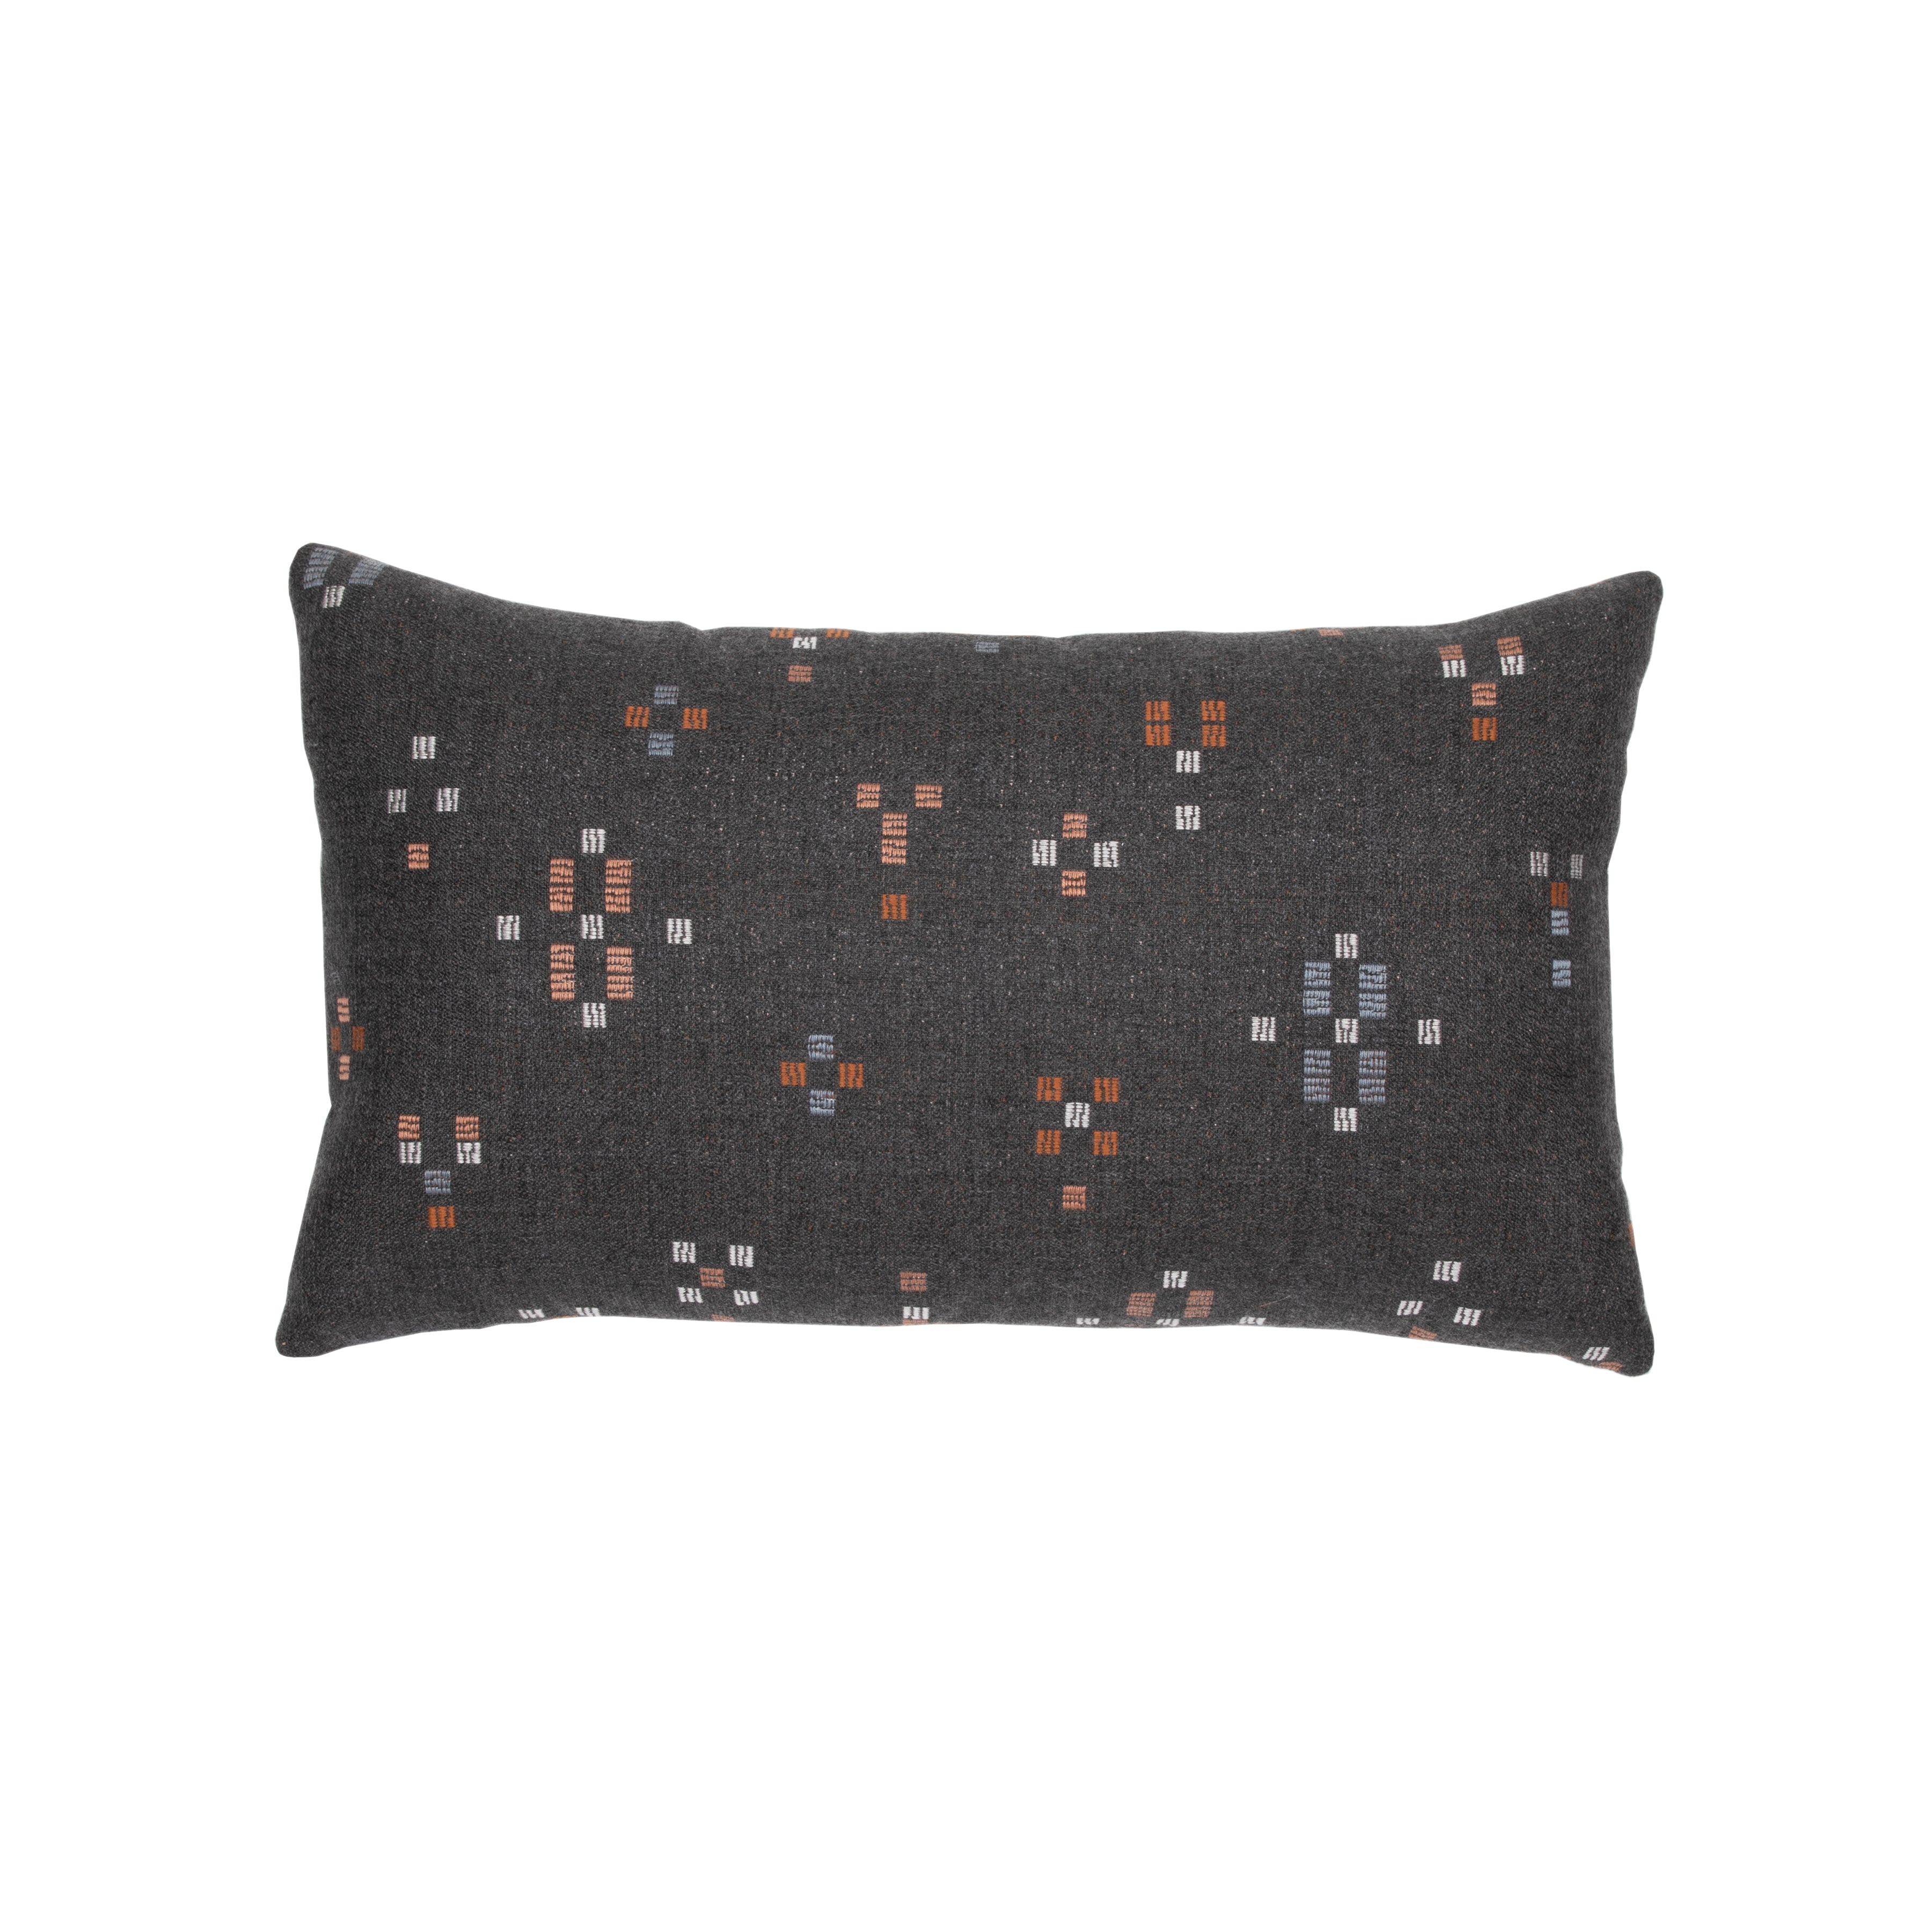 Elaine Smith Enhance Charcoal Lumbar Pillow Throw Pillows 12041435